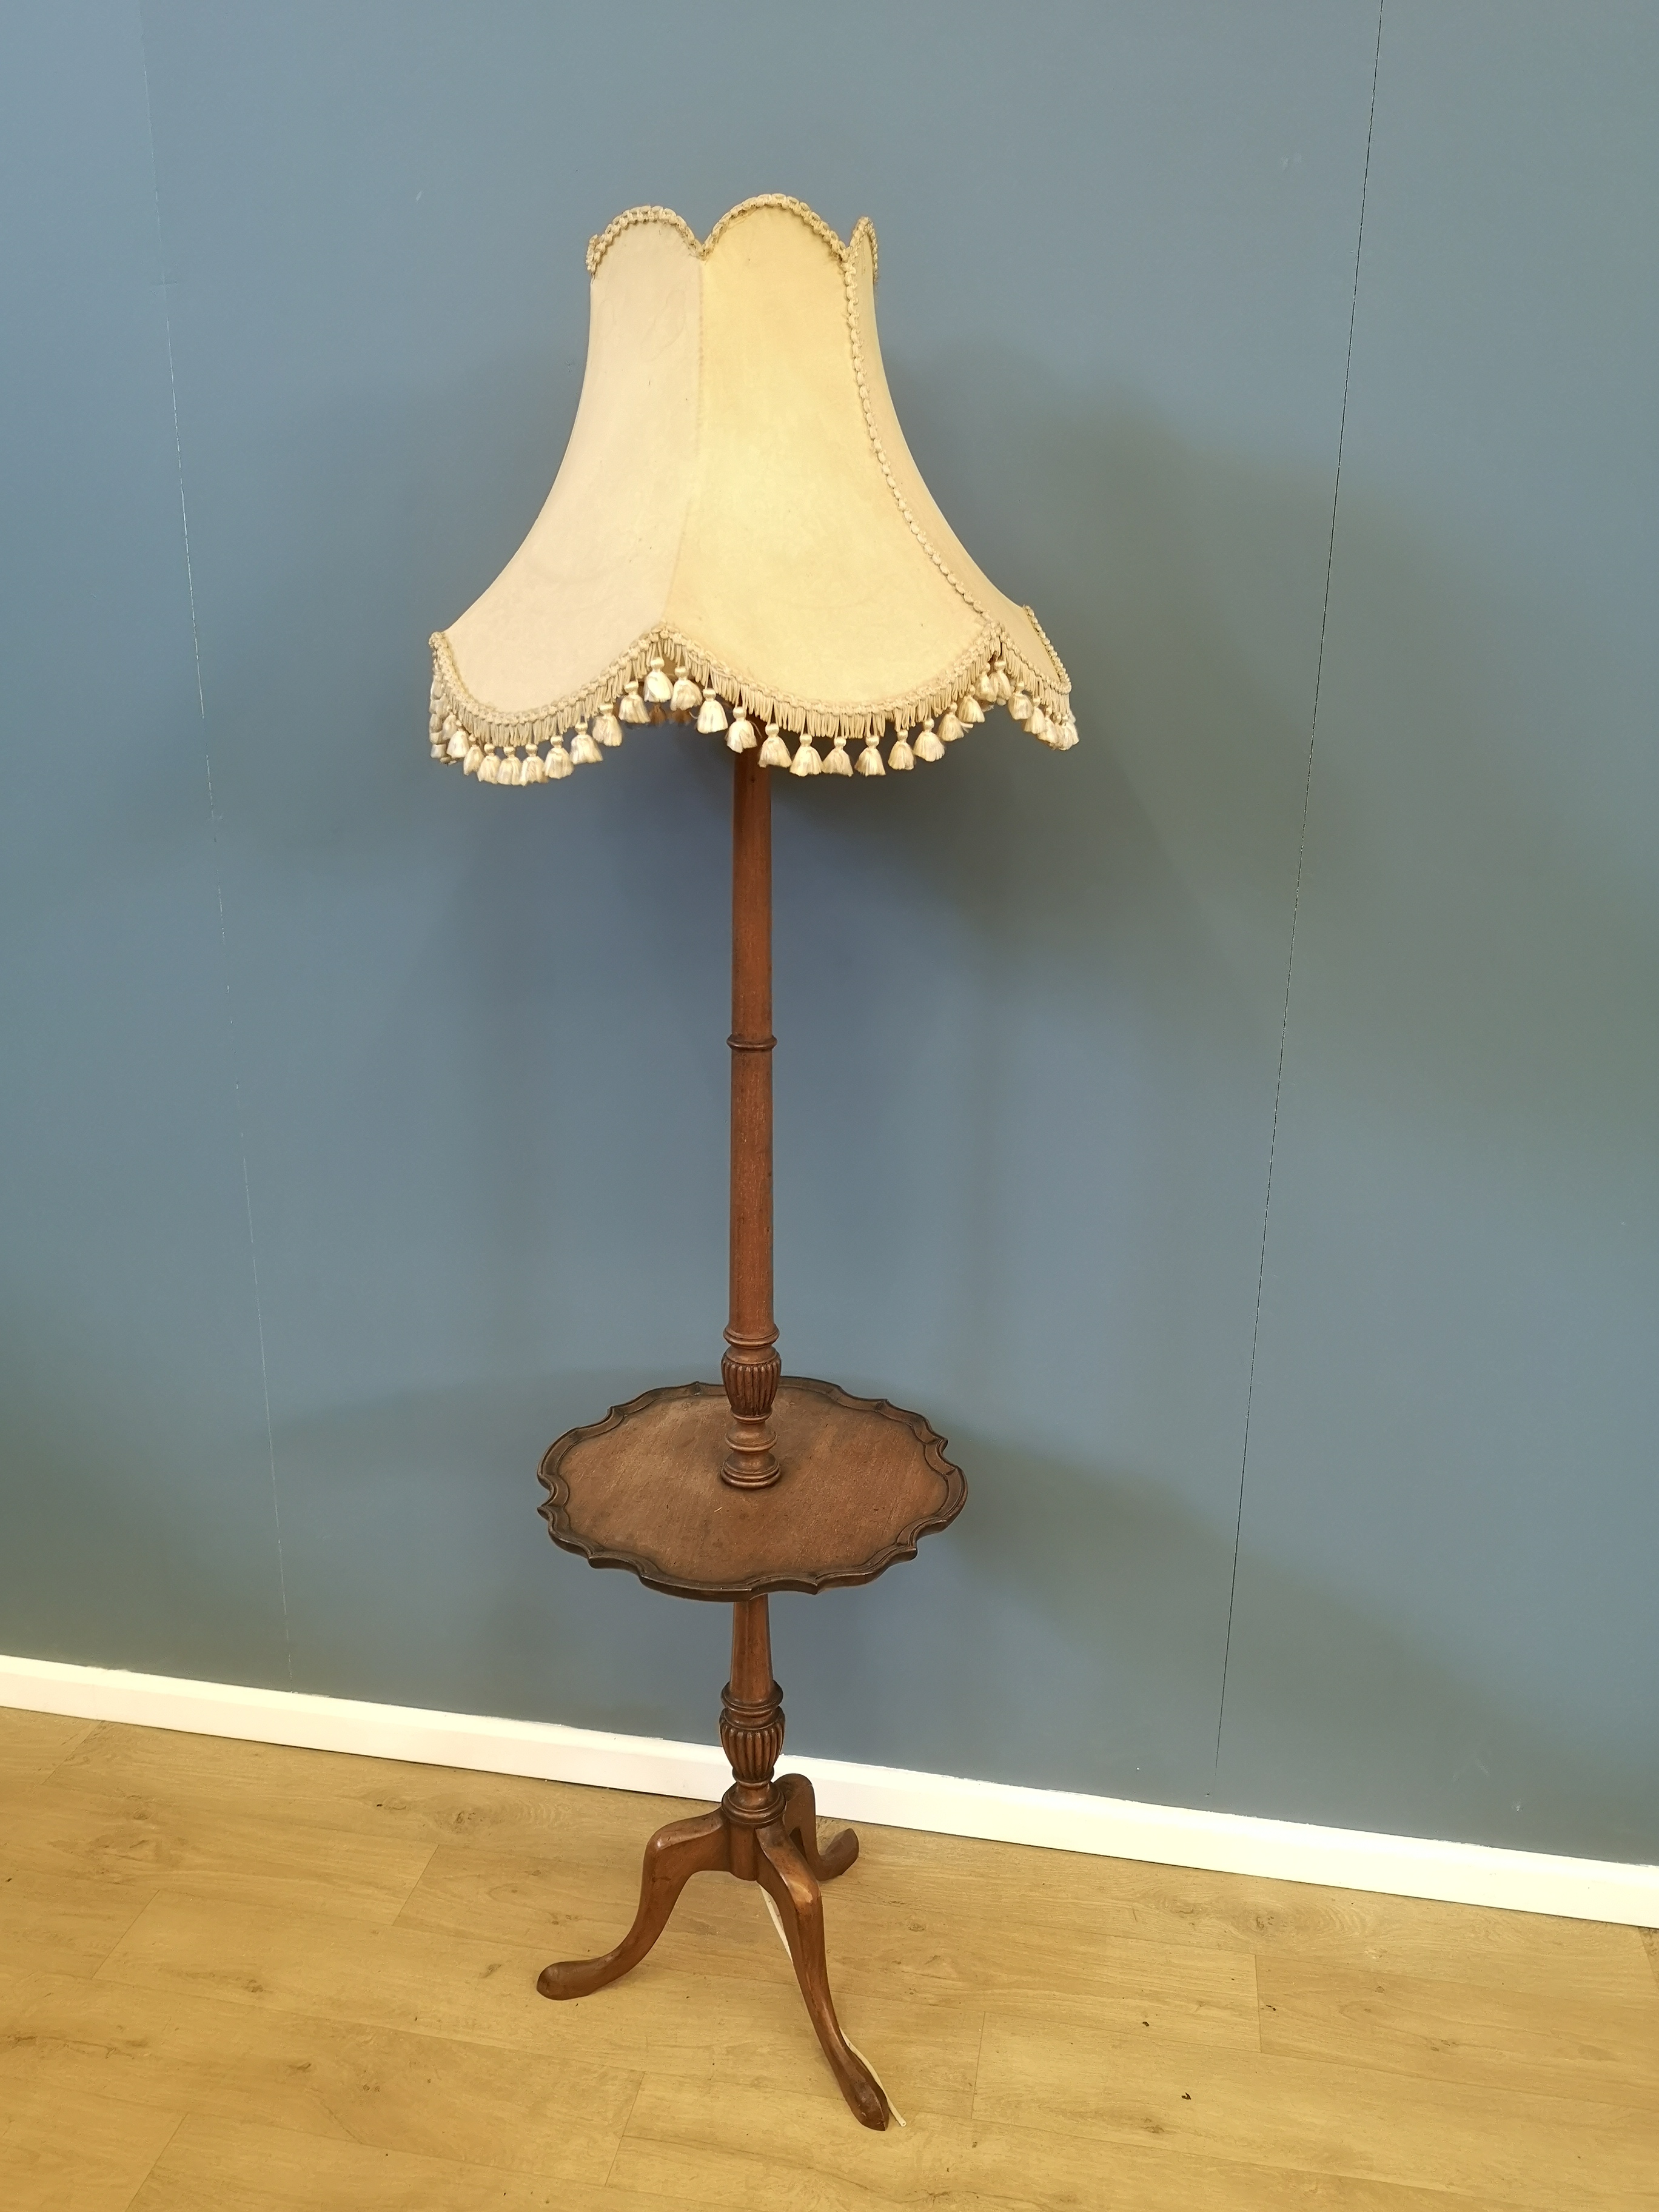 Mahogany standard lamp - Image 4 of 4